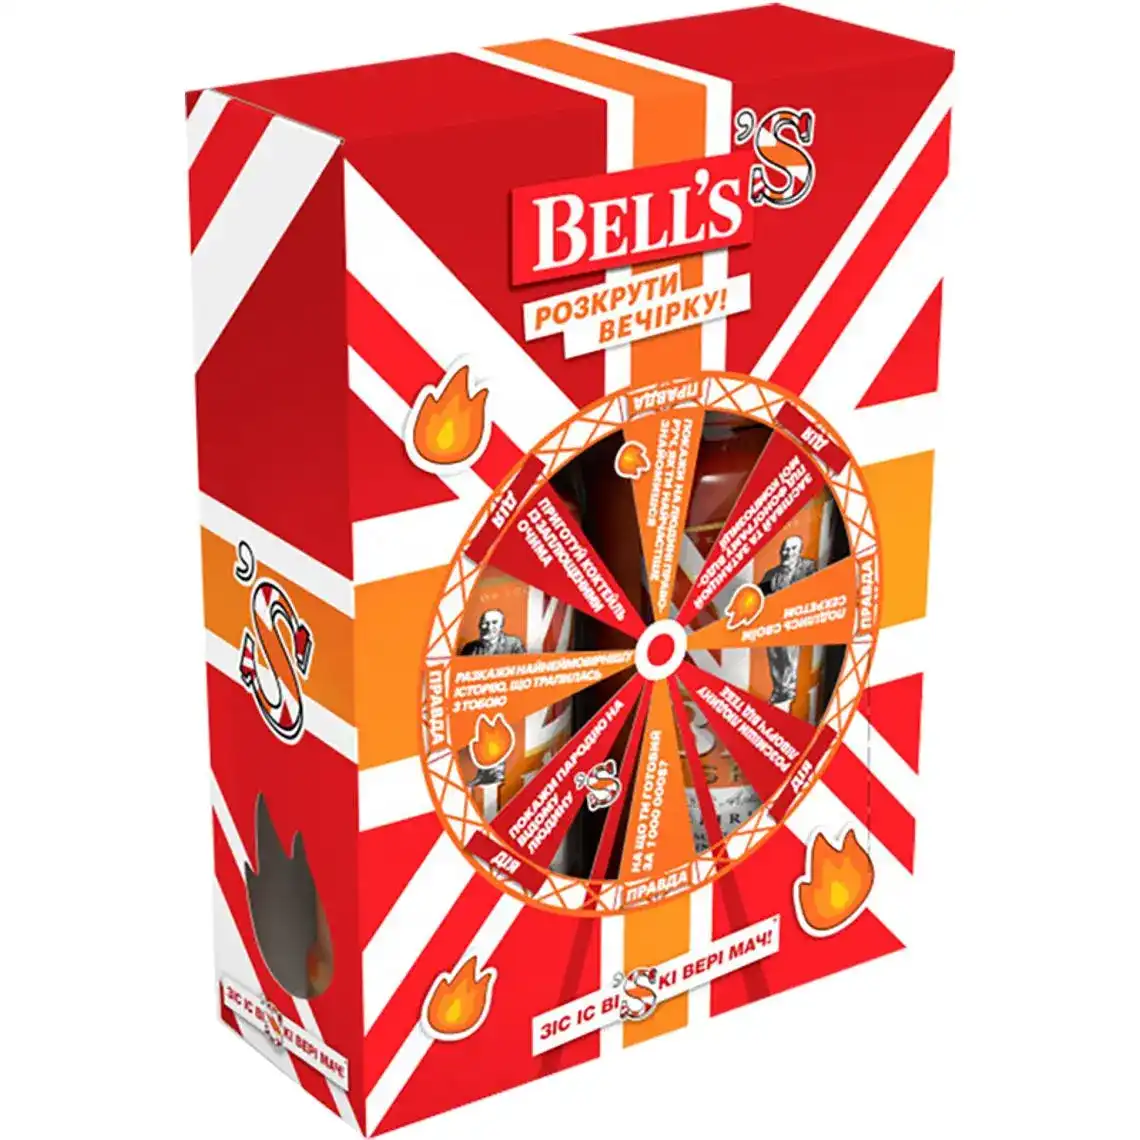 Виски Bell's Spiced купажированный в подарочной упаковке 35% 2 x 0.7 л